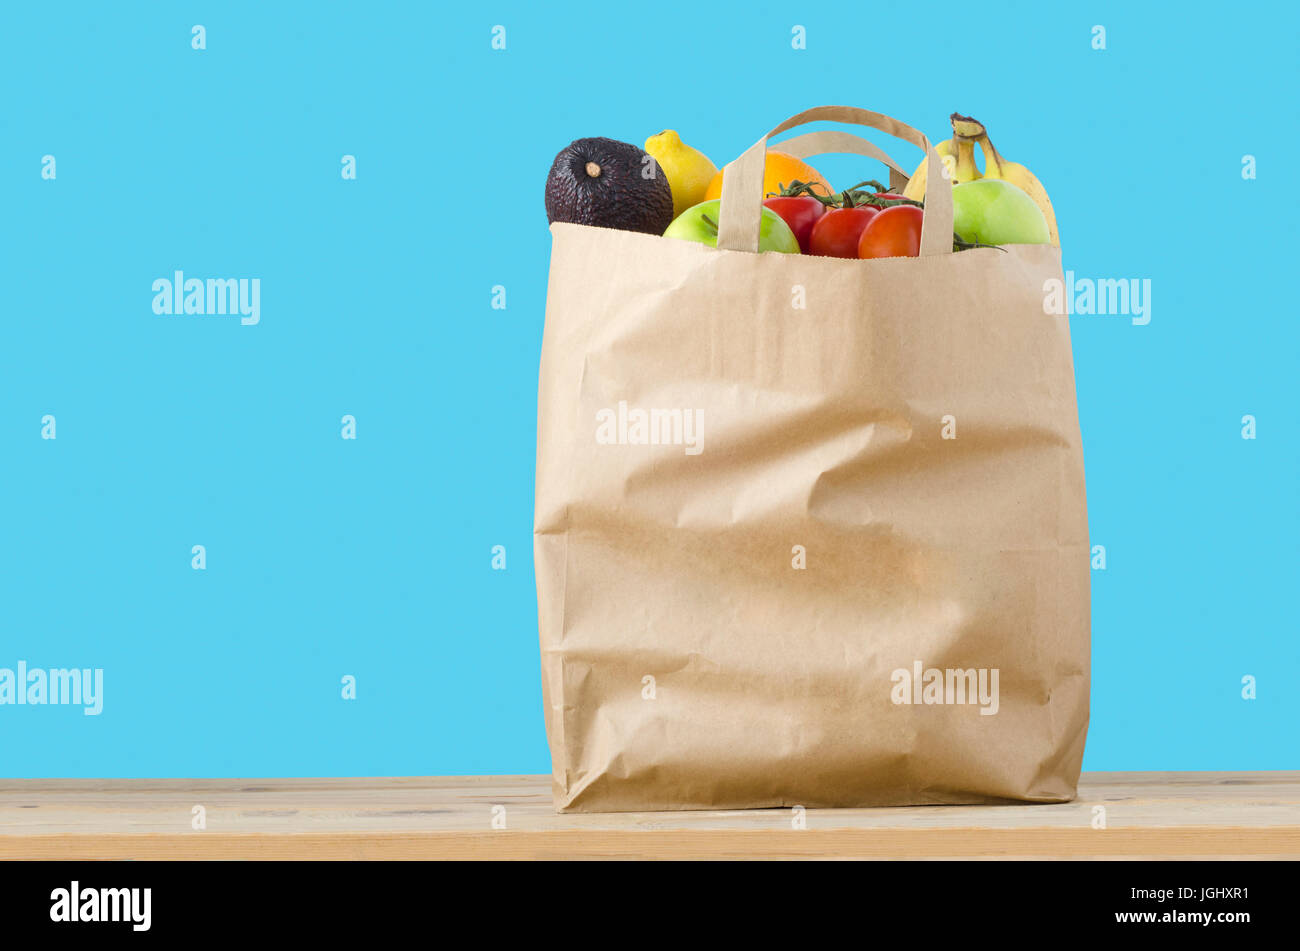 Eine braune Papiertüte Shopping, gefüllt mit Obstsorten auf einem hellen Holzoberfläche an die Spitze.  Isoliert auf türkis blauem Hintergrund. Stockfoto